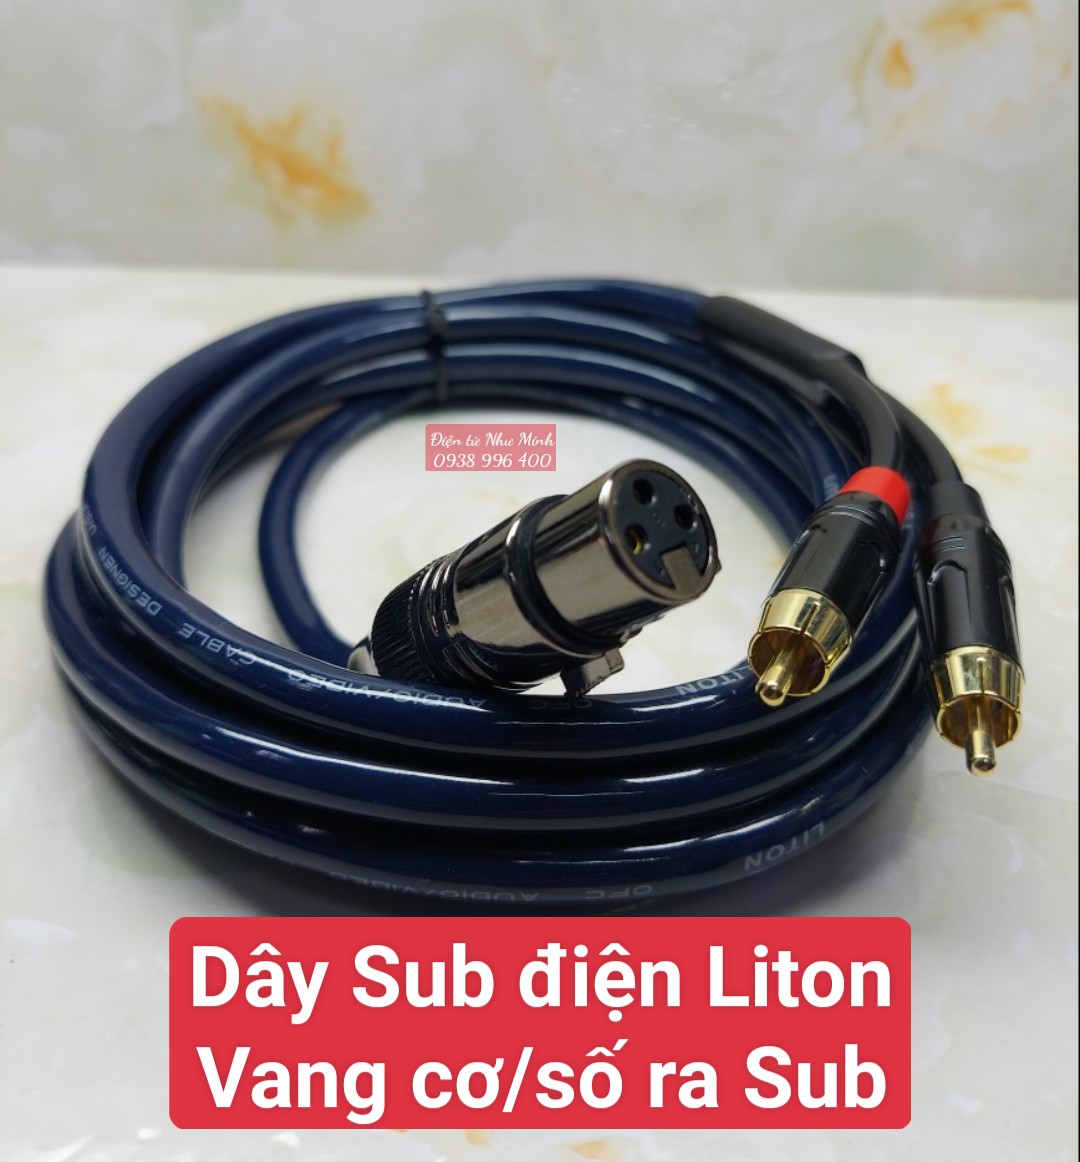 Dây Sub điện Liton kết nối từ Vang Cơ/ Vang Số canon  ra Sub điện av